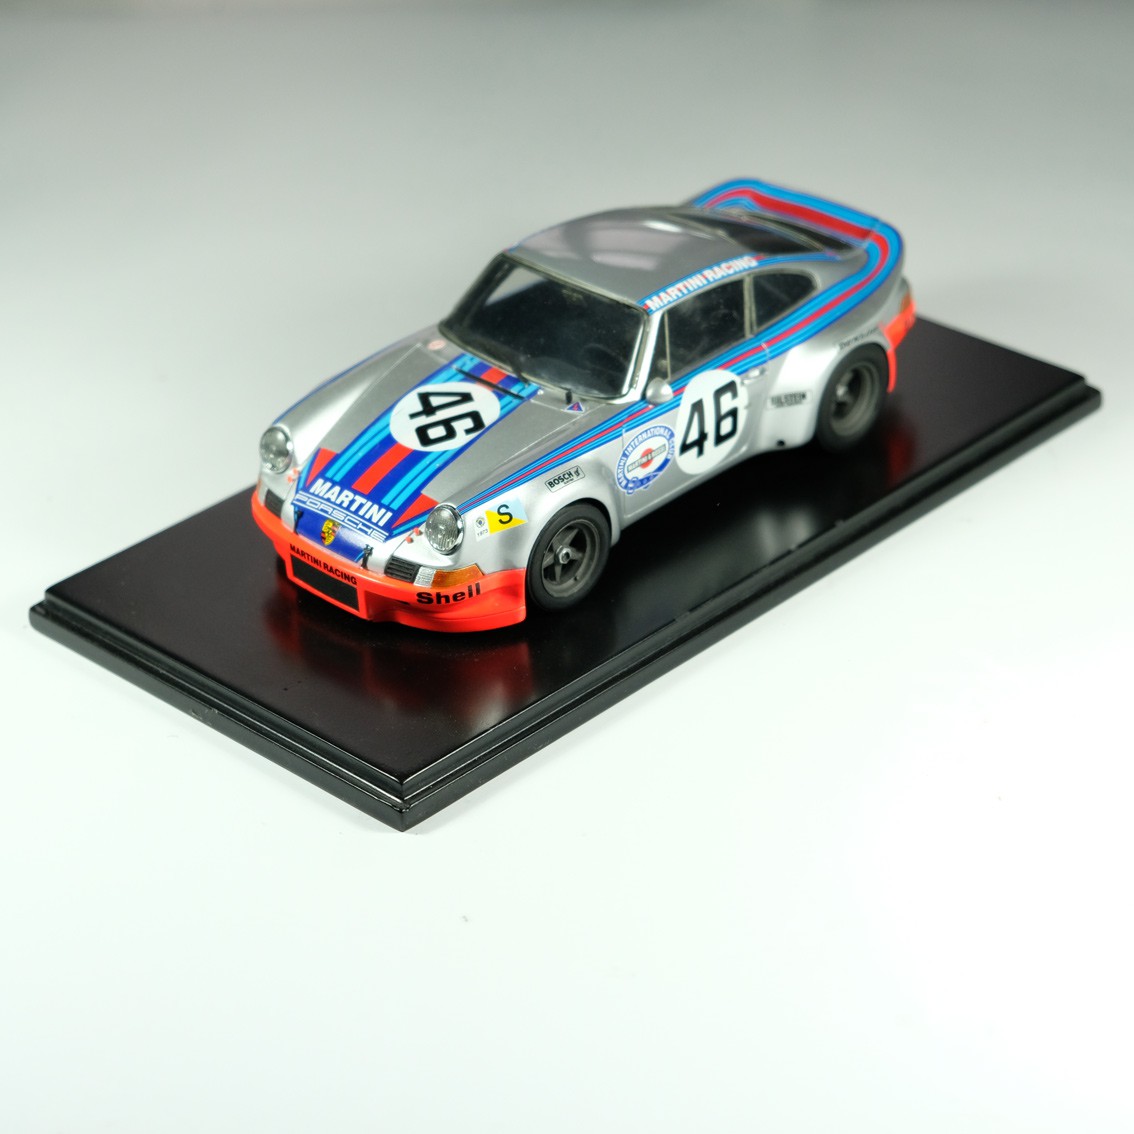 LE MANS miniatures Porsche Carrera RSR n°46